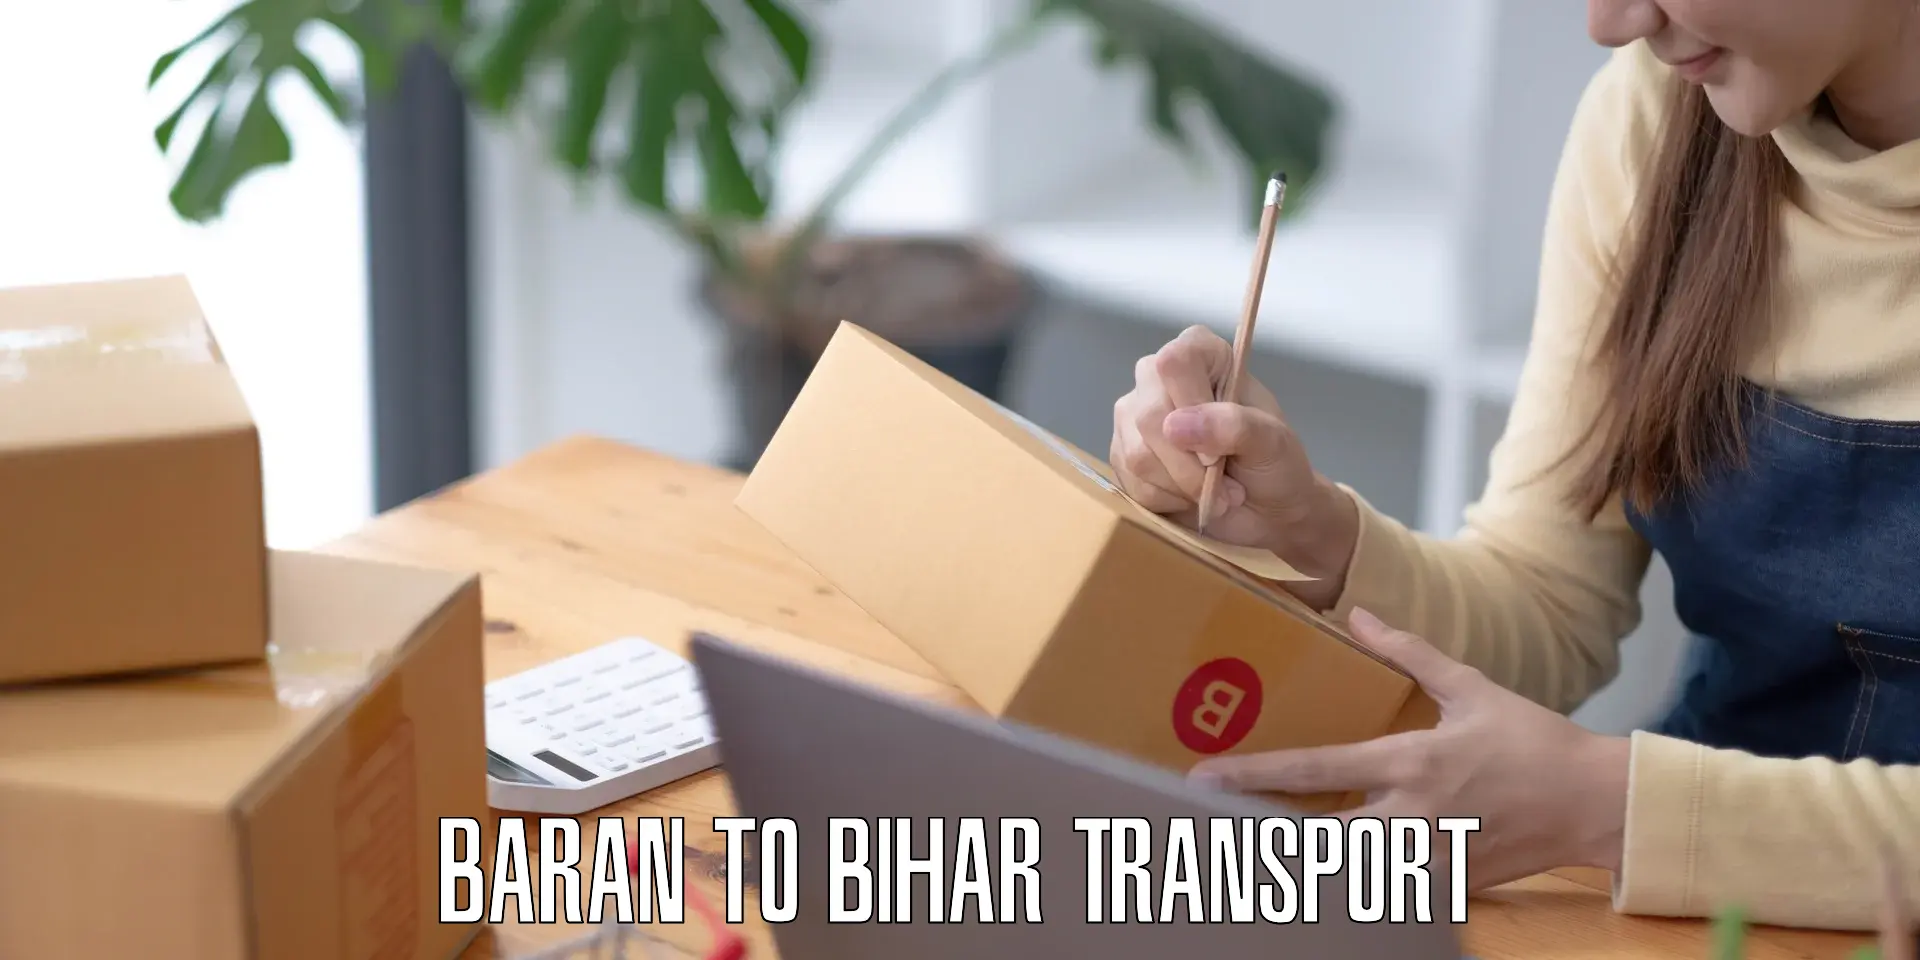 Furniture transport service Baran to Kochas